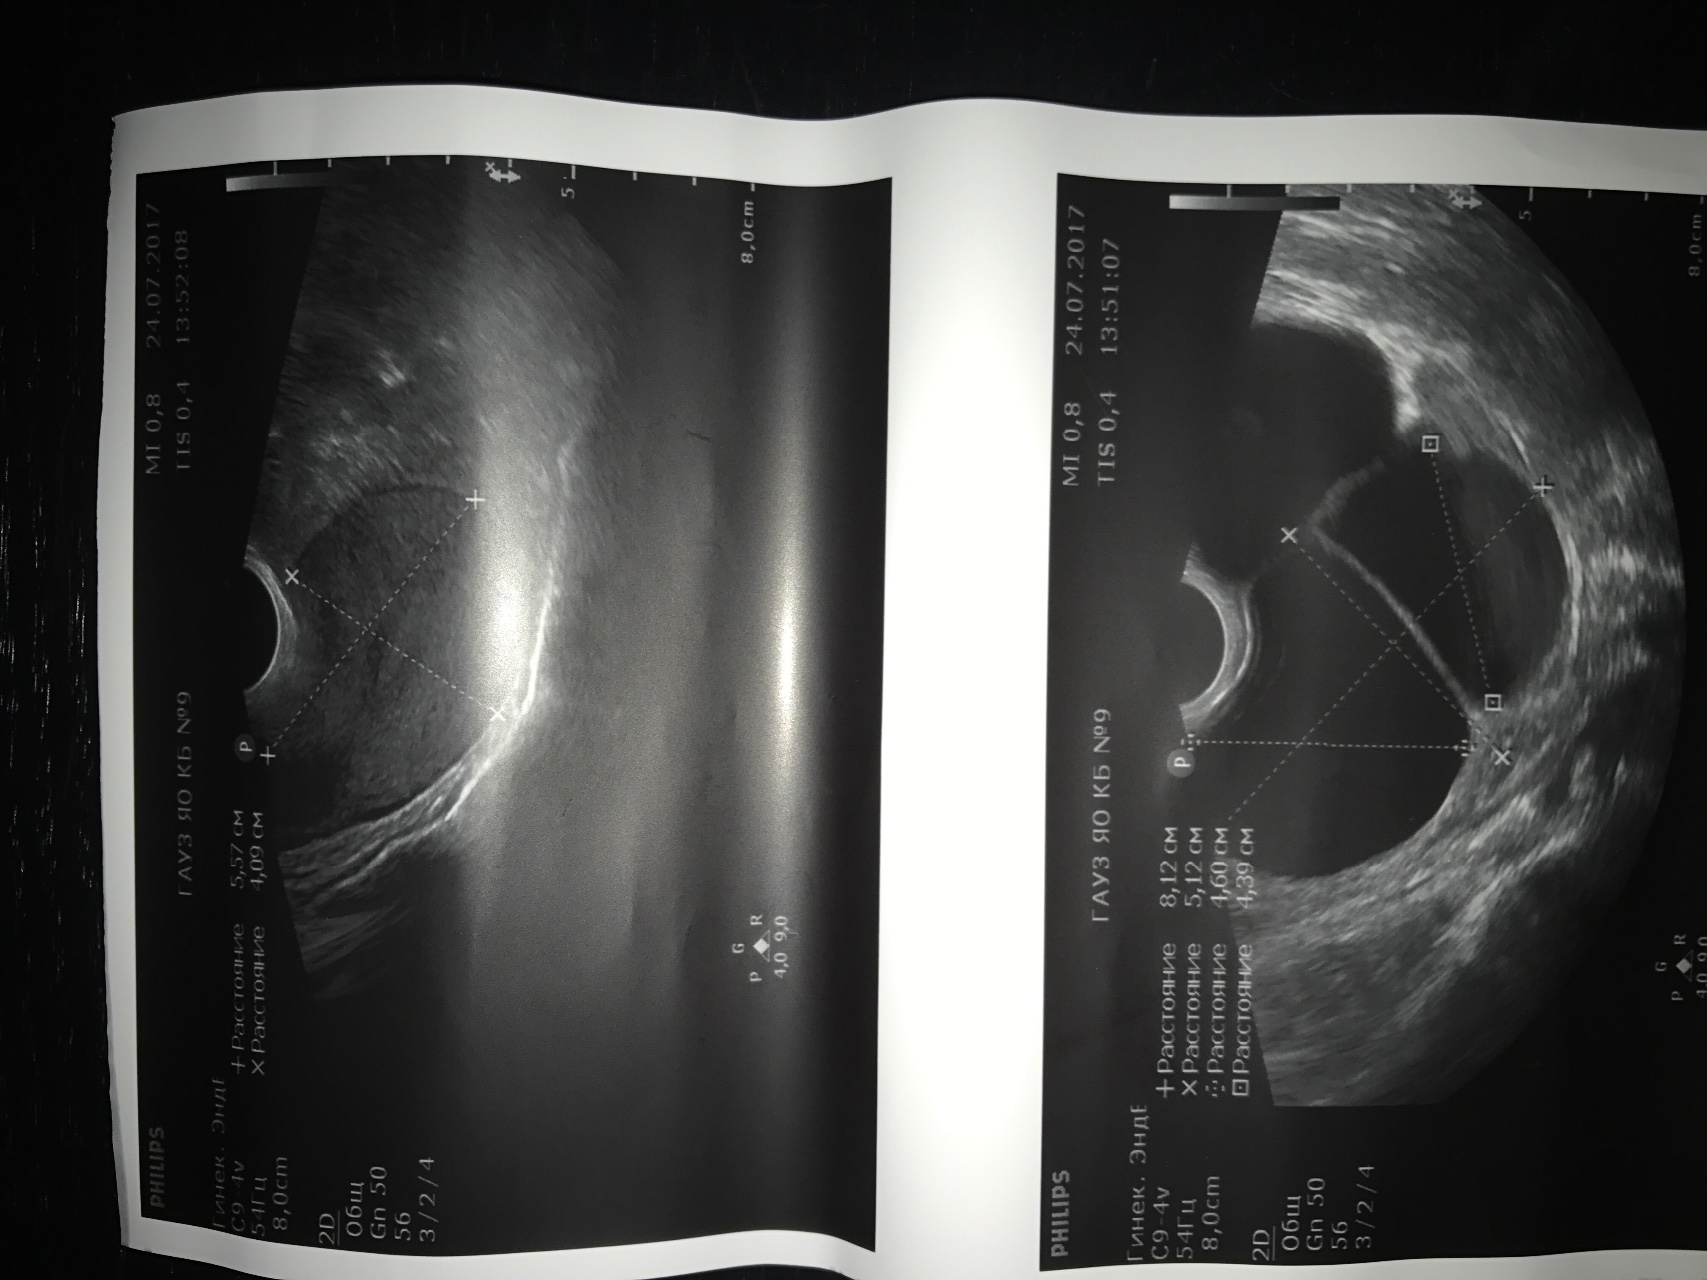 Киста 8 мм. Внематочная беременность в яичнике на УЗИ. Киста правого яичника 8 см.